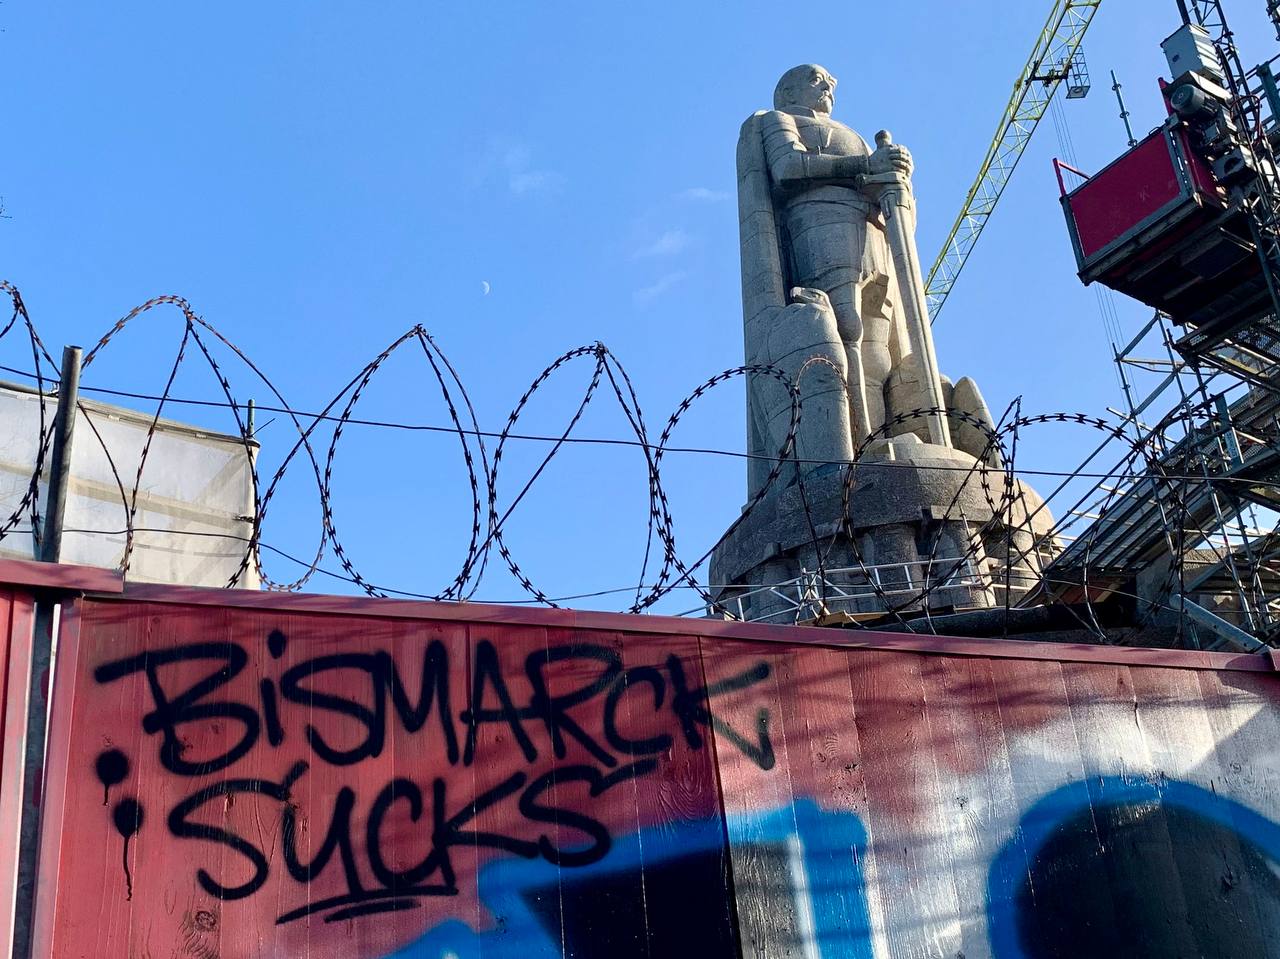 Eine Mauer mit Stacheldraht auf der "Bismak Sucks!" geschrieben steht. Im Hintergrund ist die Hamburger Bismarkstatue zu sehen.